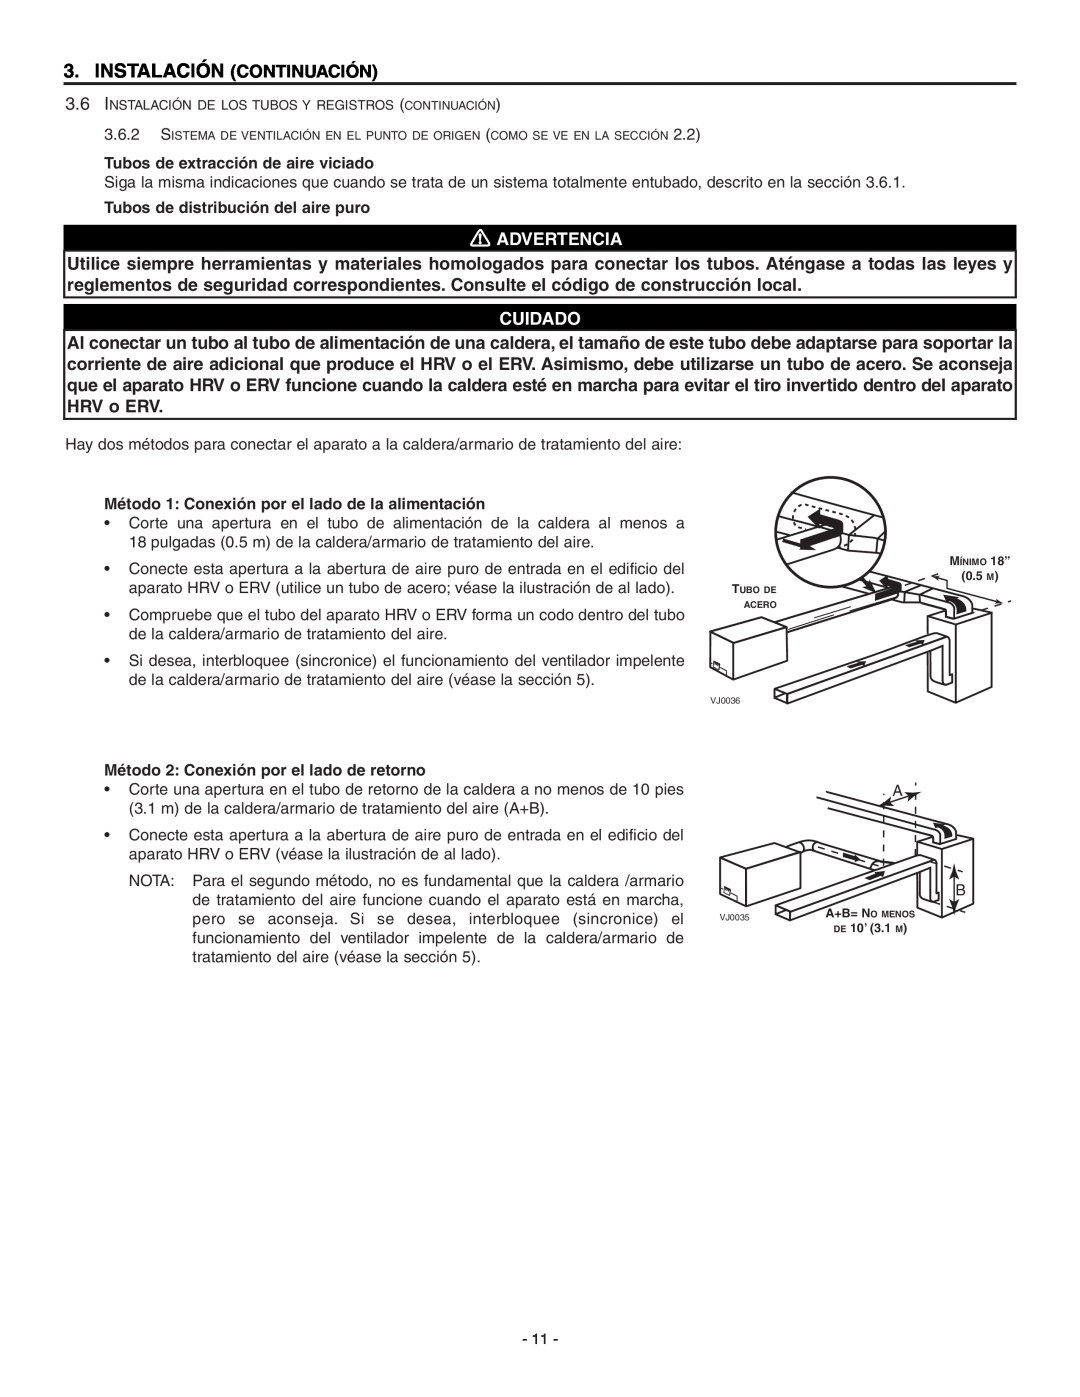 Broan HRV90HT, ERV90HCT installation instructions Instalación Continuación, Advertencia, Cuidado 